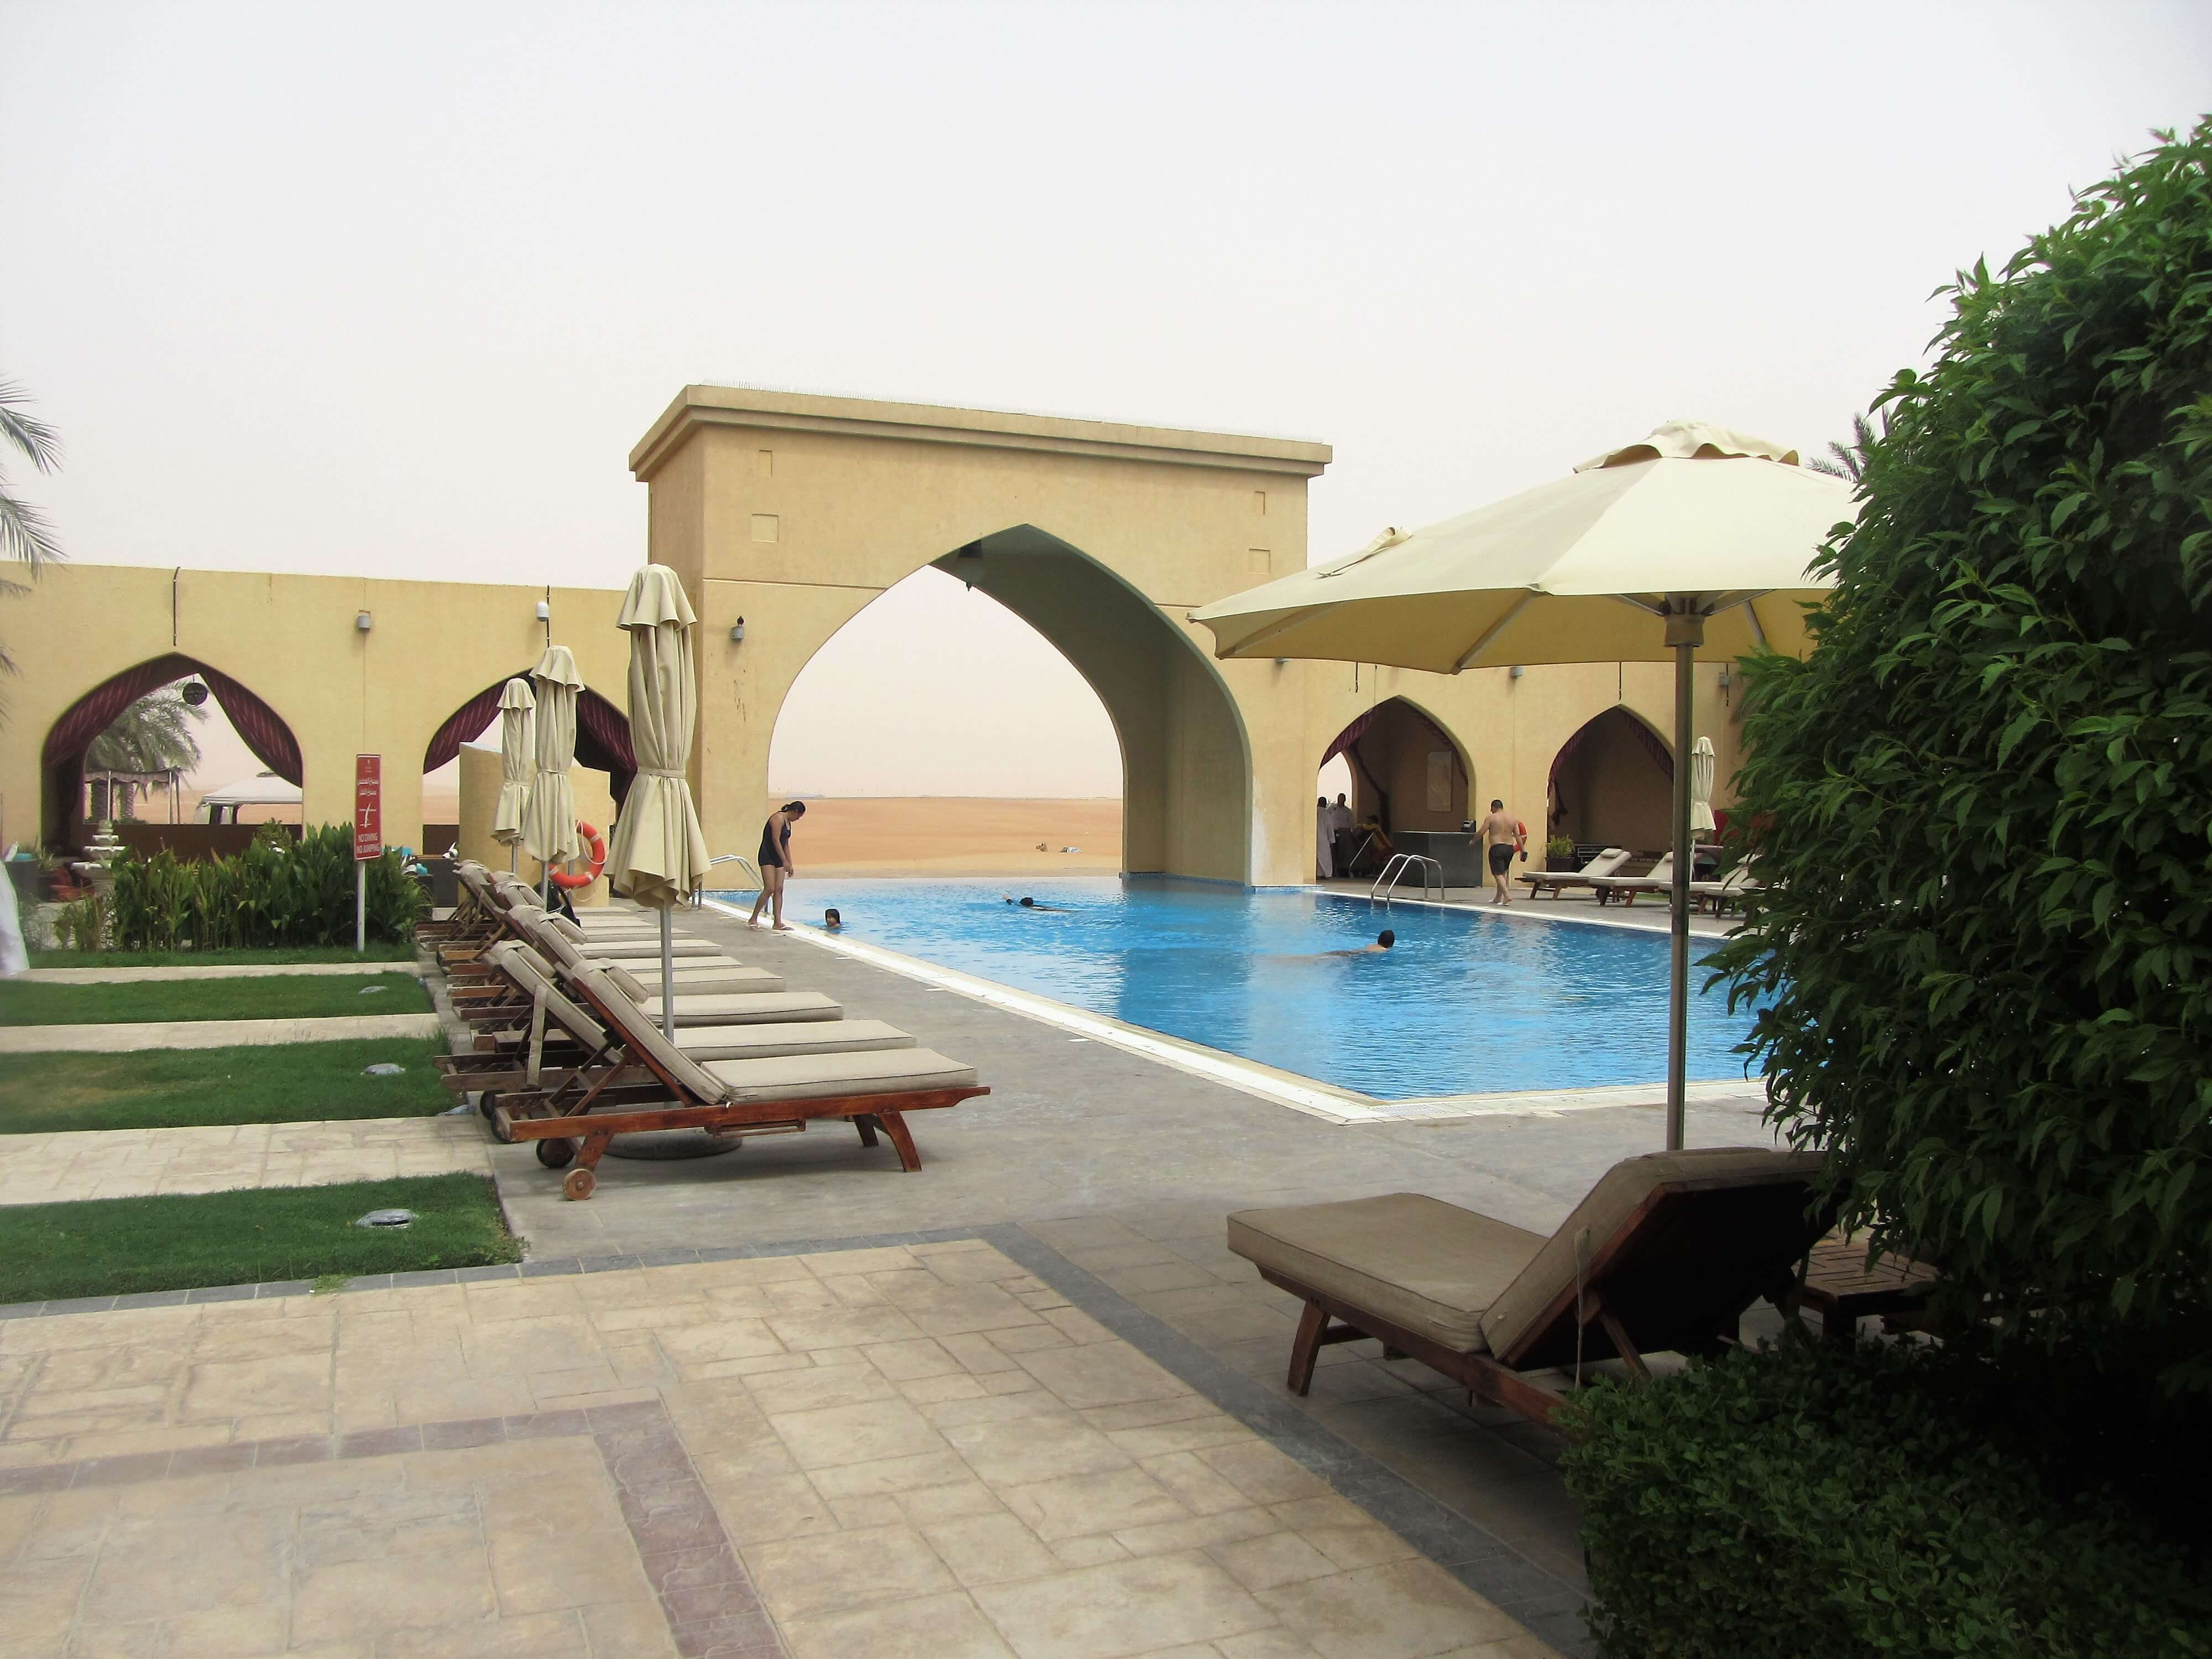 عروض فندق تلال ليوا بمناسبة عام زايد 2018 - عين دبي